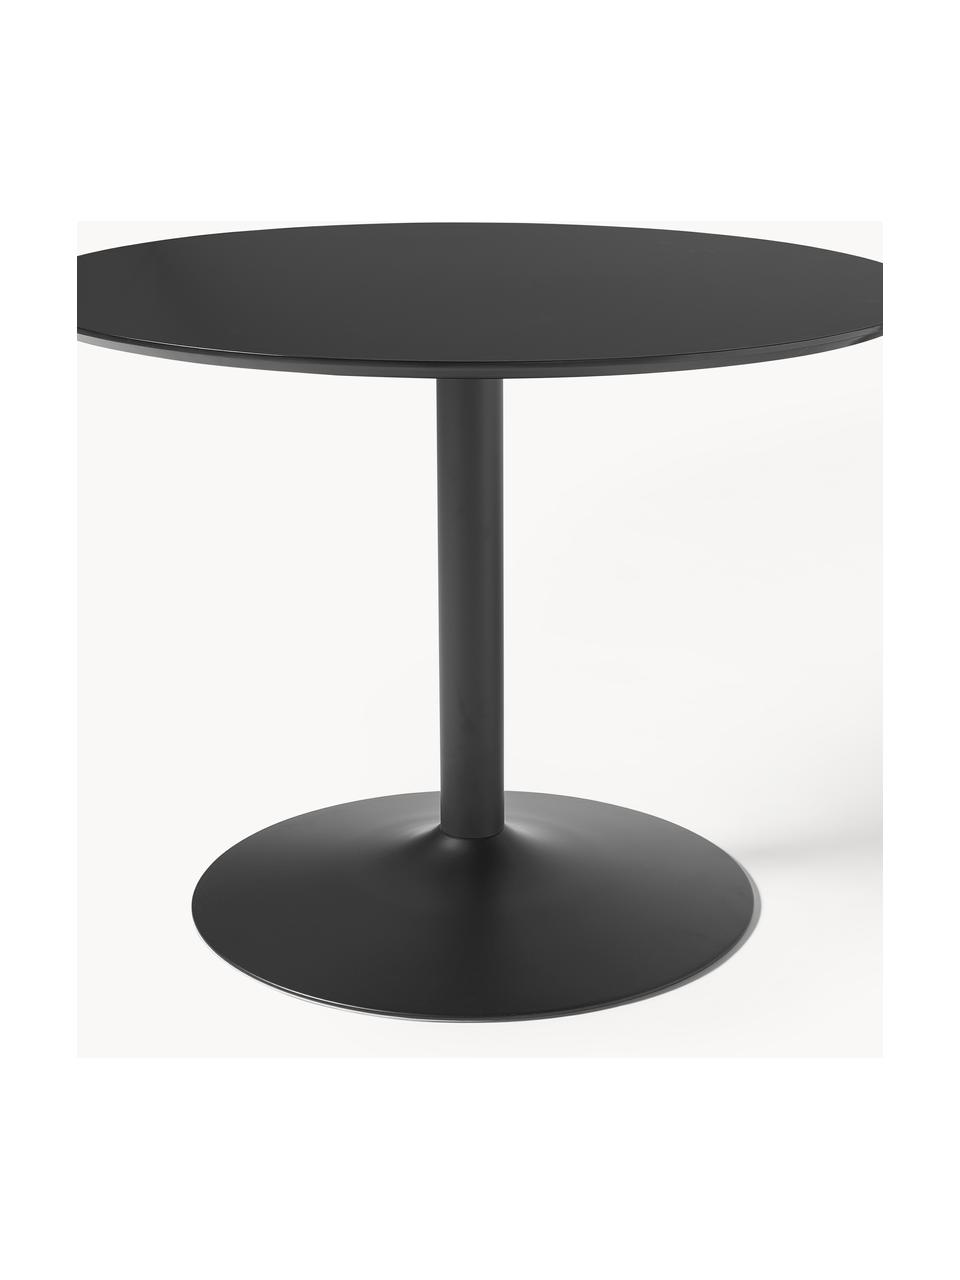 Okrągły stół do jadalni Menorca, Ø 100 cm, Blat: laminat wysokociśnieniowy, Noga: metal malowany proszkowo, Czarny, Ø 100 cm